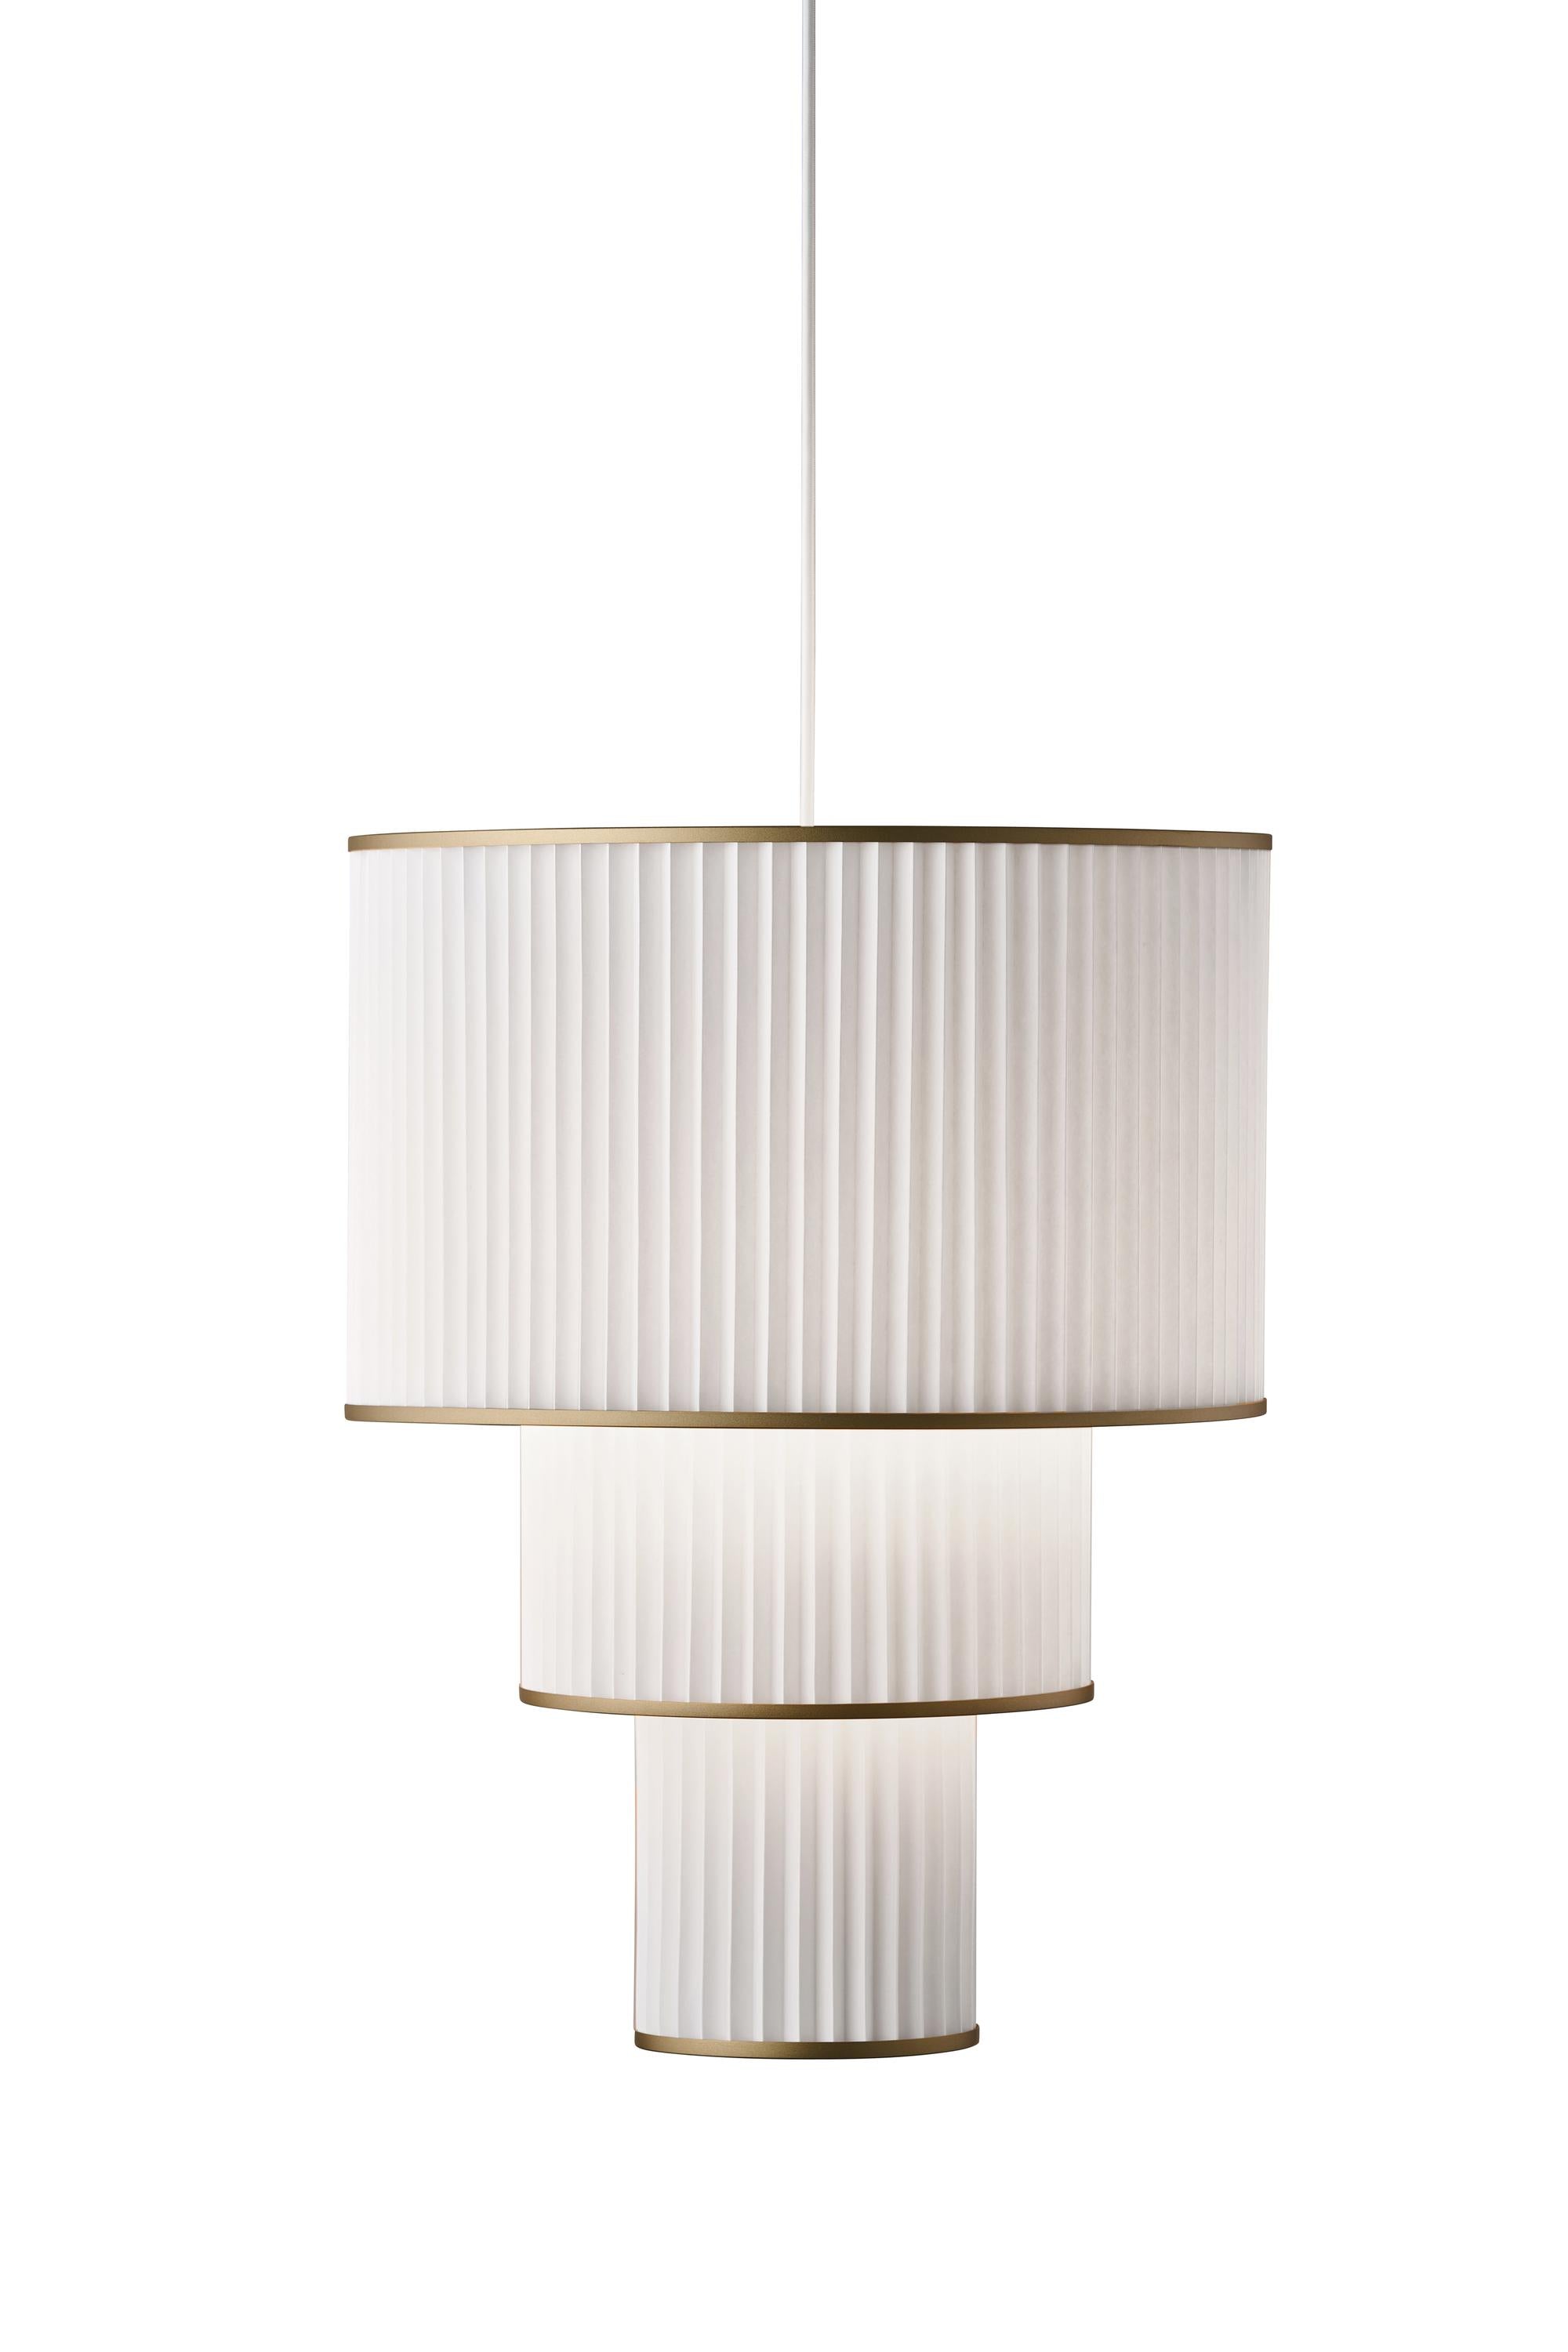 Le Klint Plivello Lámpara de suspensión dorada/blanca con 3 tonos (S M L)